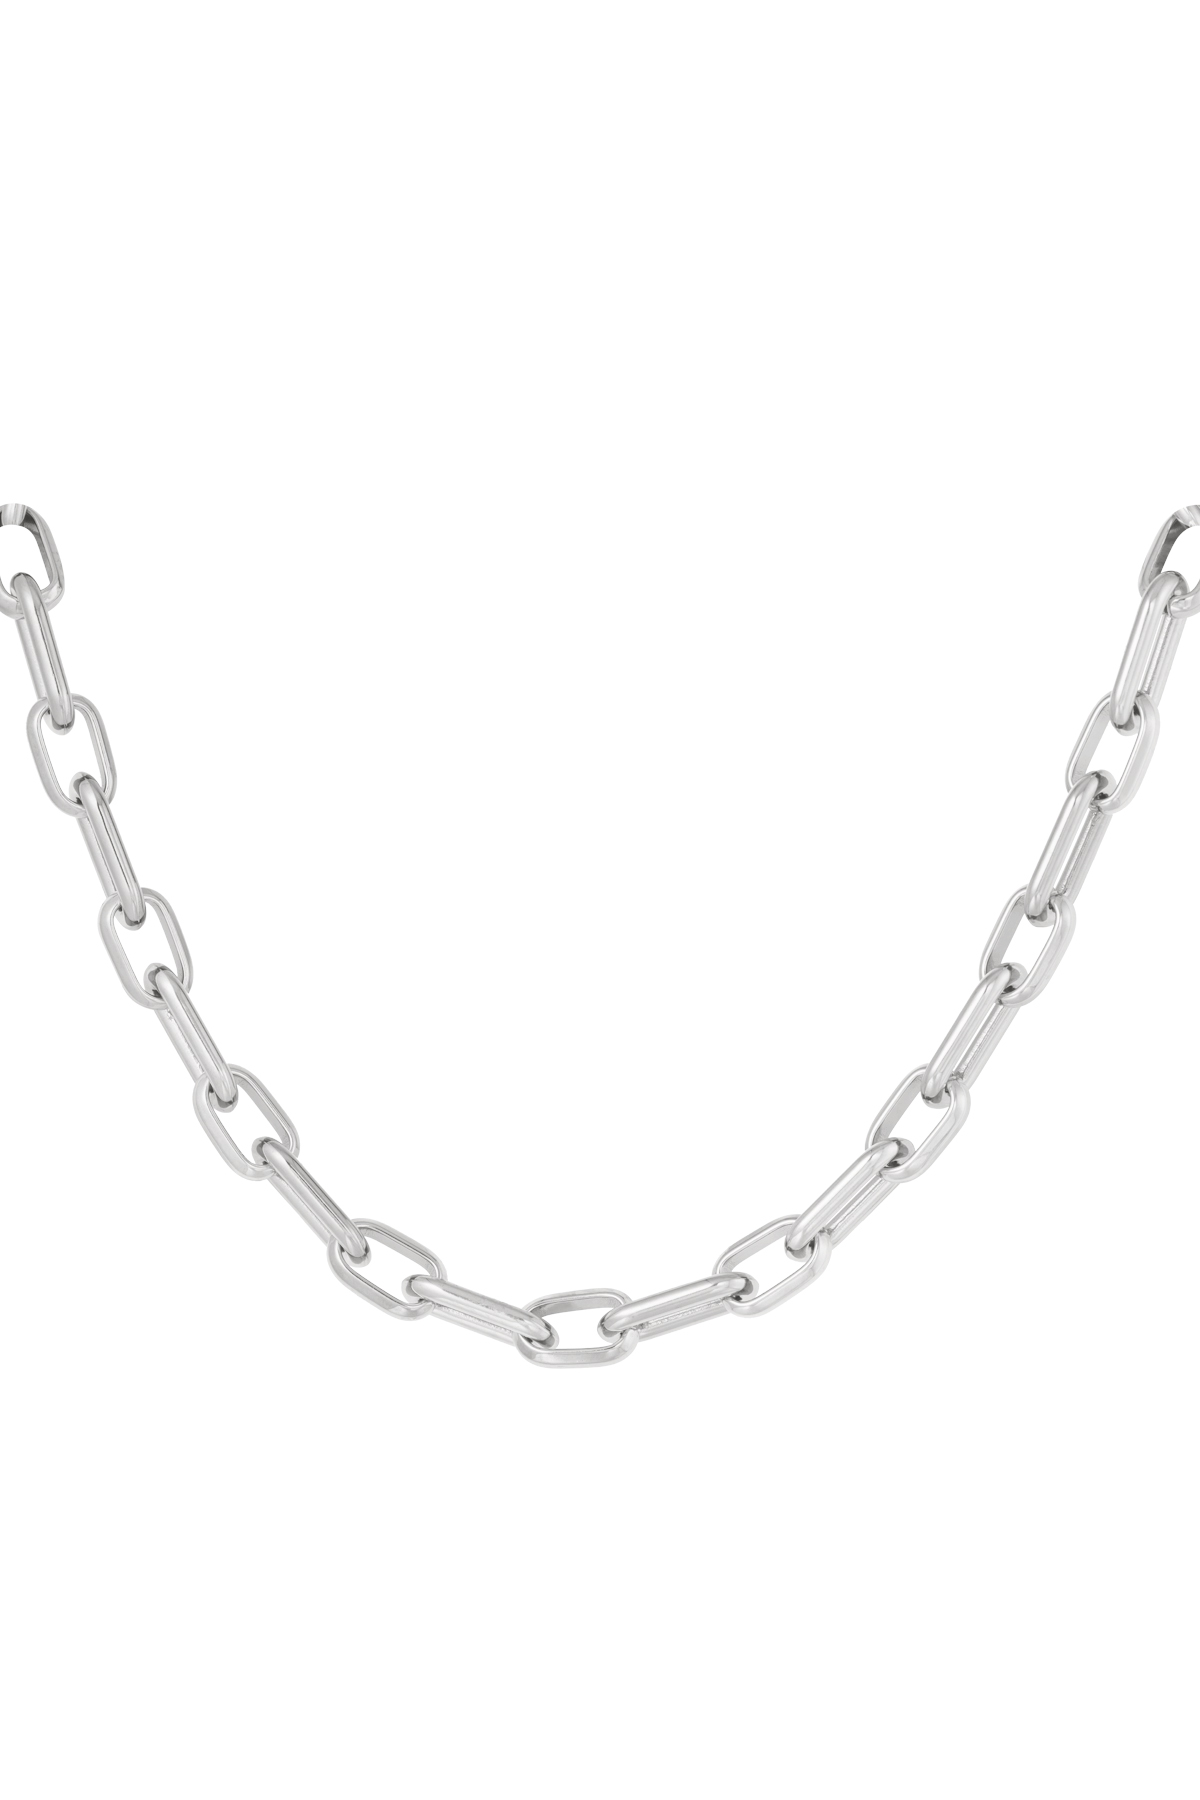 Halskette mit länglichen Gliedern und Anhängern – Silber